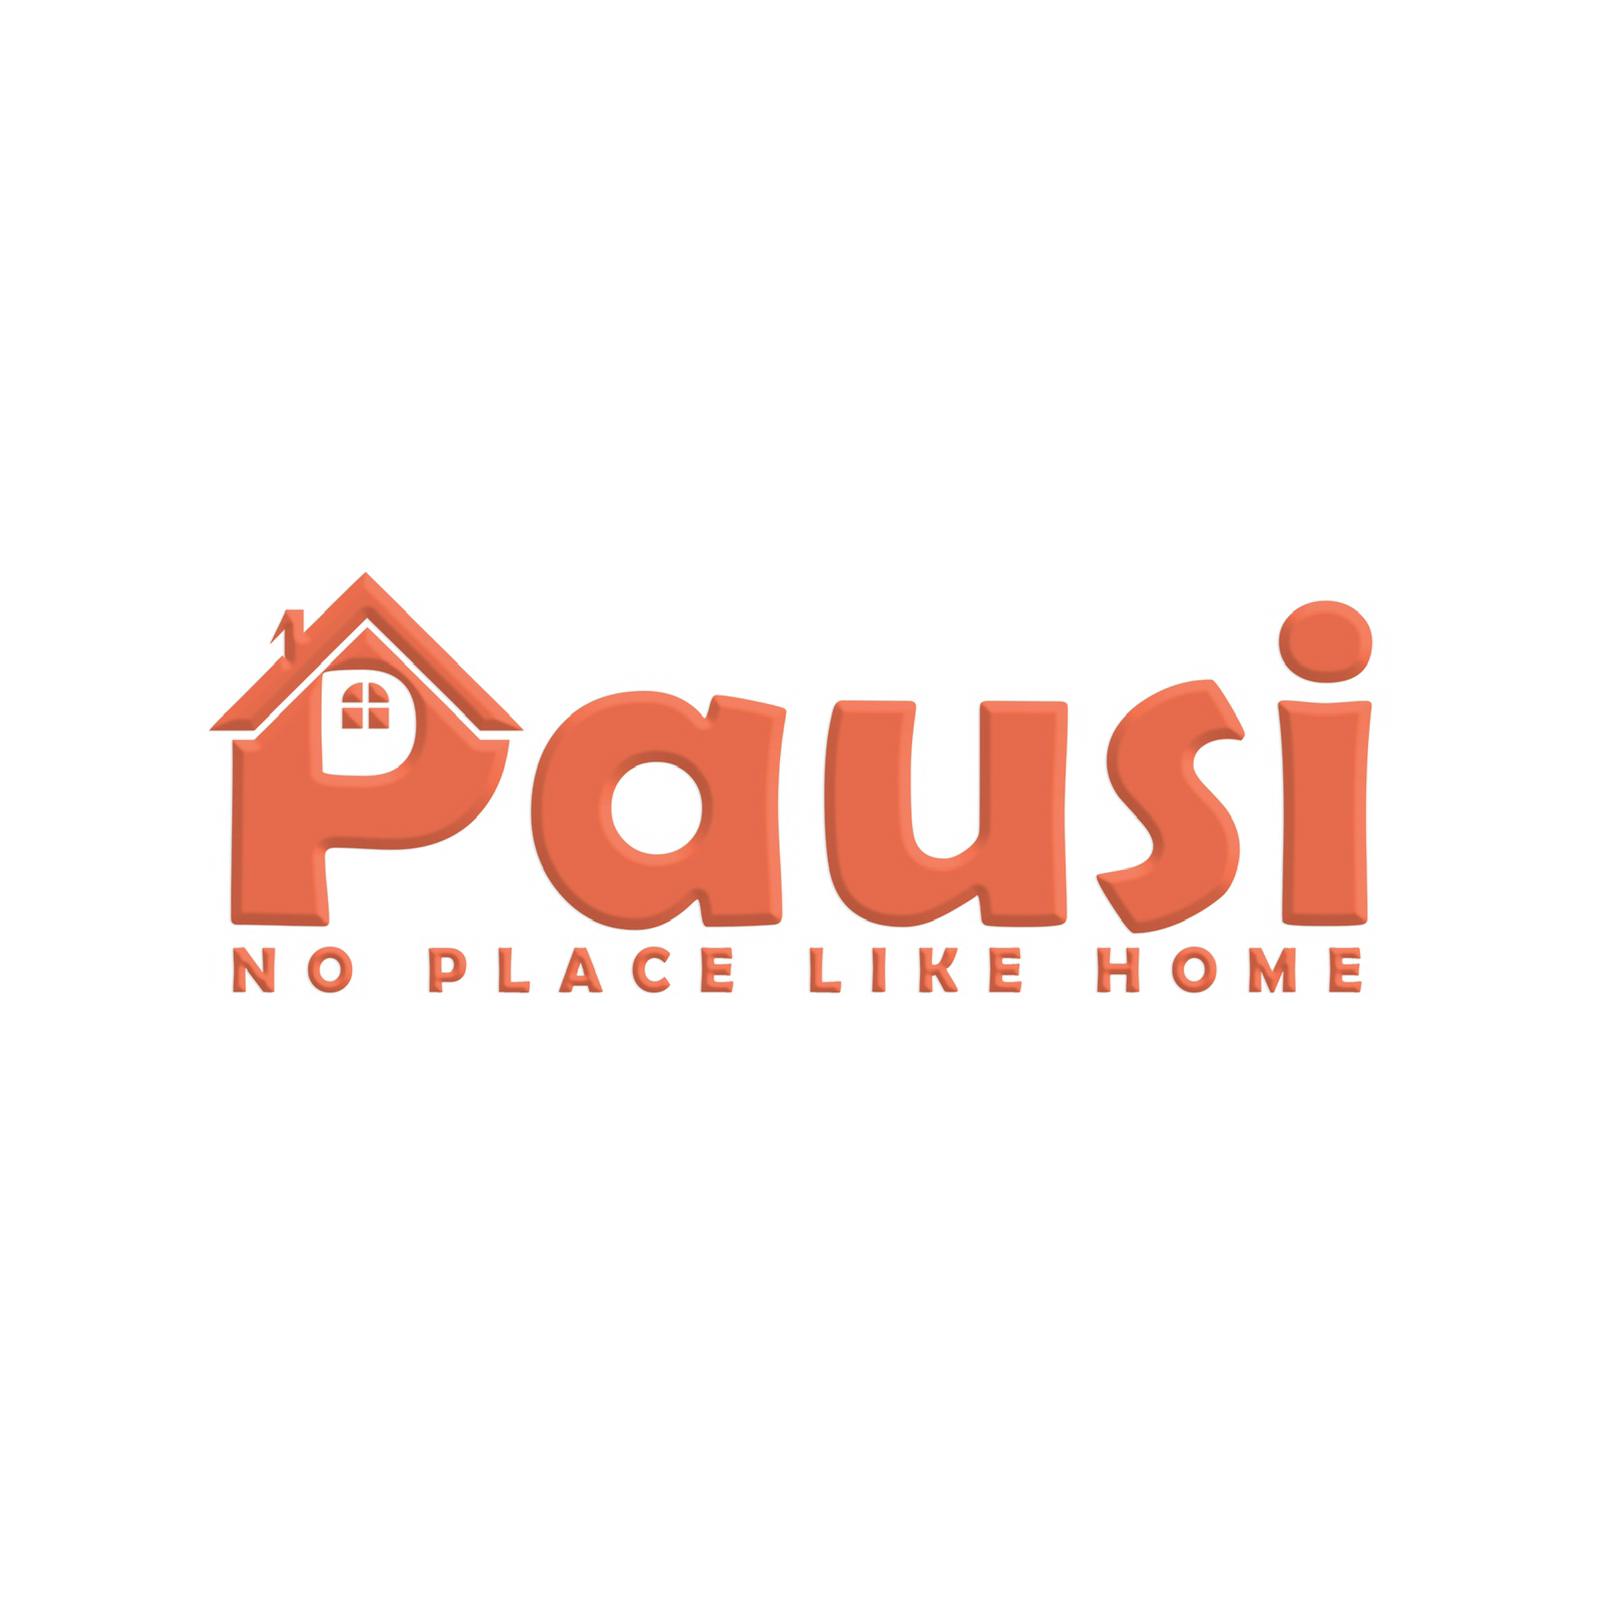 Pausilogo - About Us